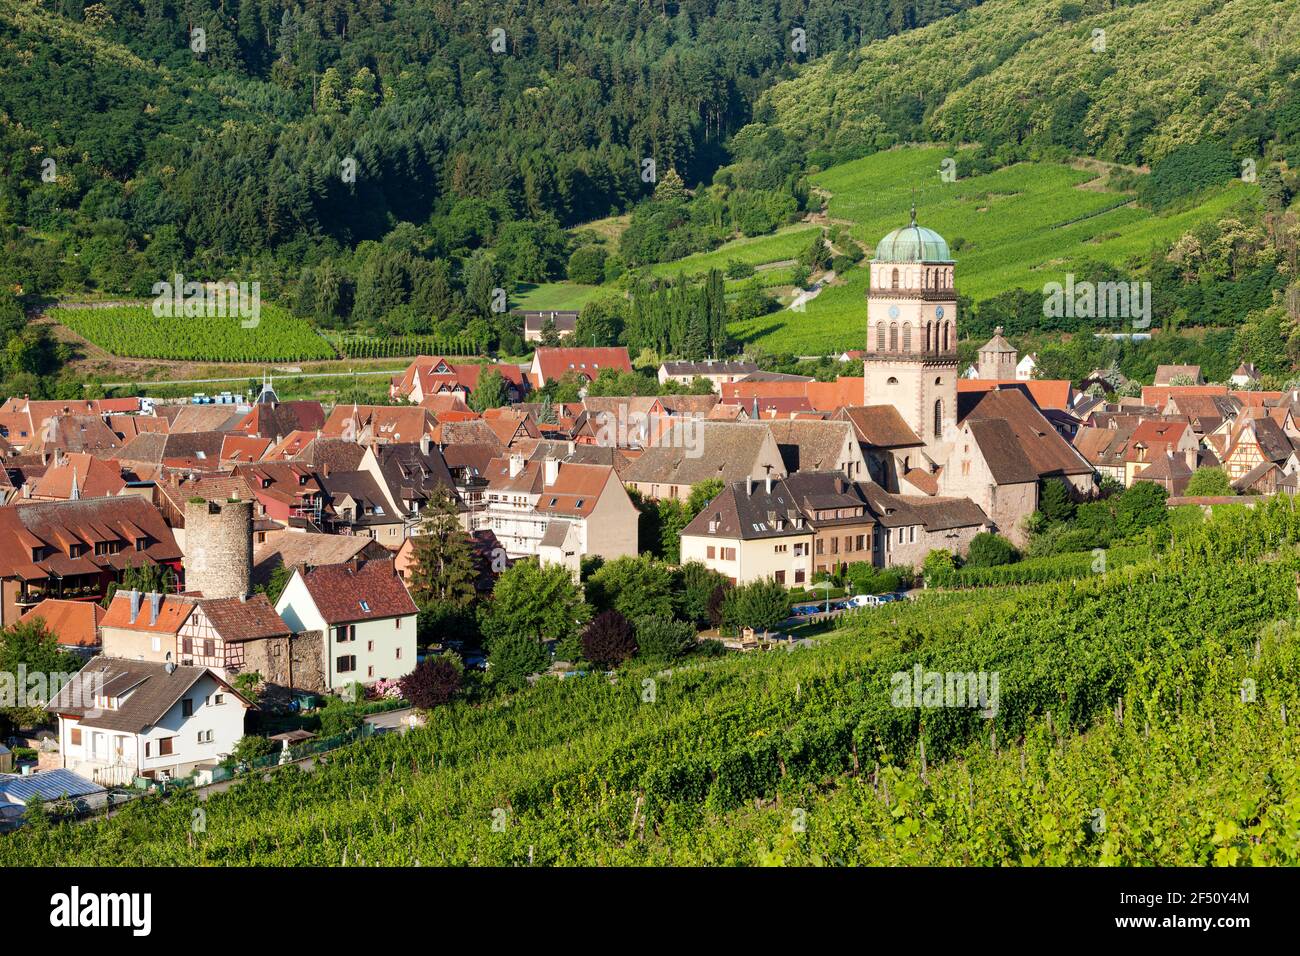 Dorf von Kaysersberg mit Turm von Sainte Croix Kirche inmitten der Weinberge von Grand Cru, Elsass Haut-Rhin-Frankreich Stockfoto